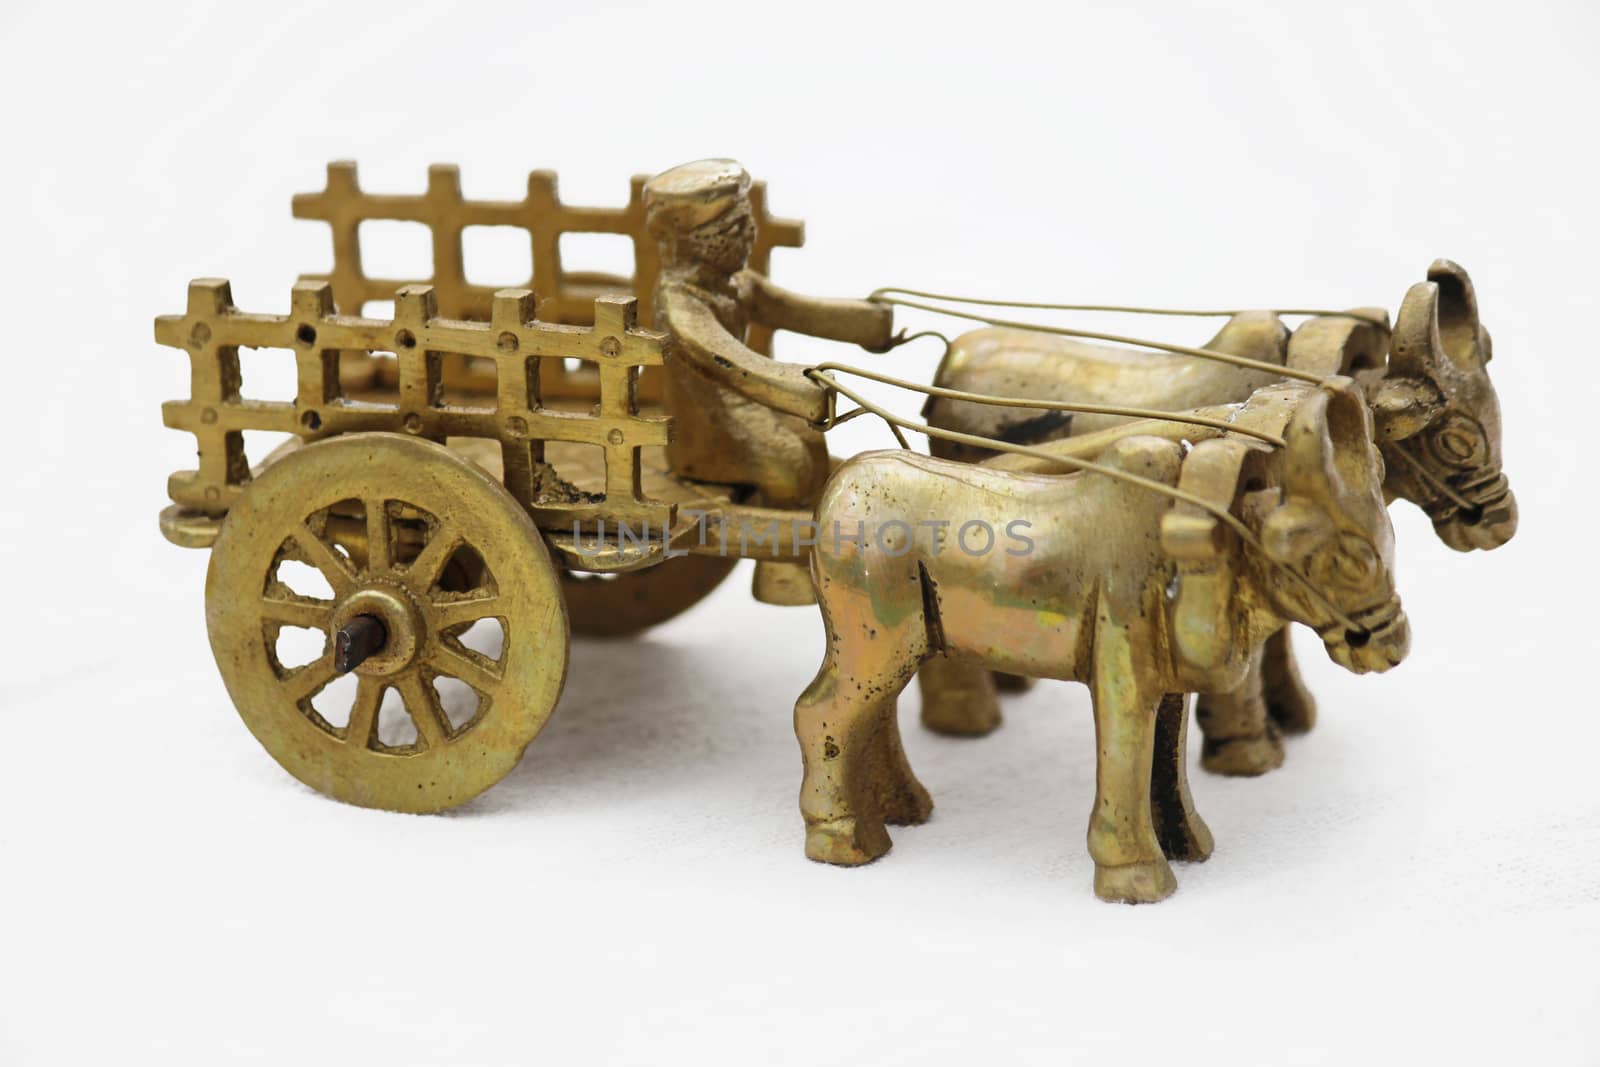 Antique Finish Brass Bullock Cart Sculpture